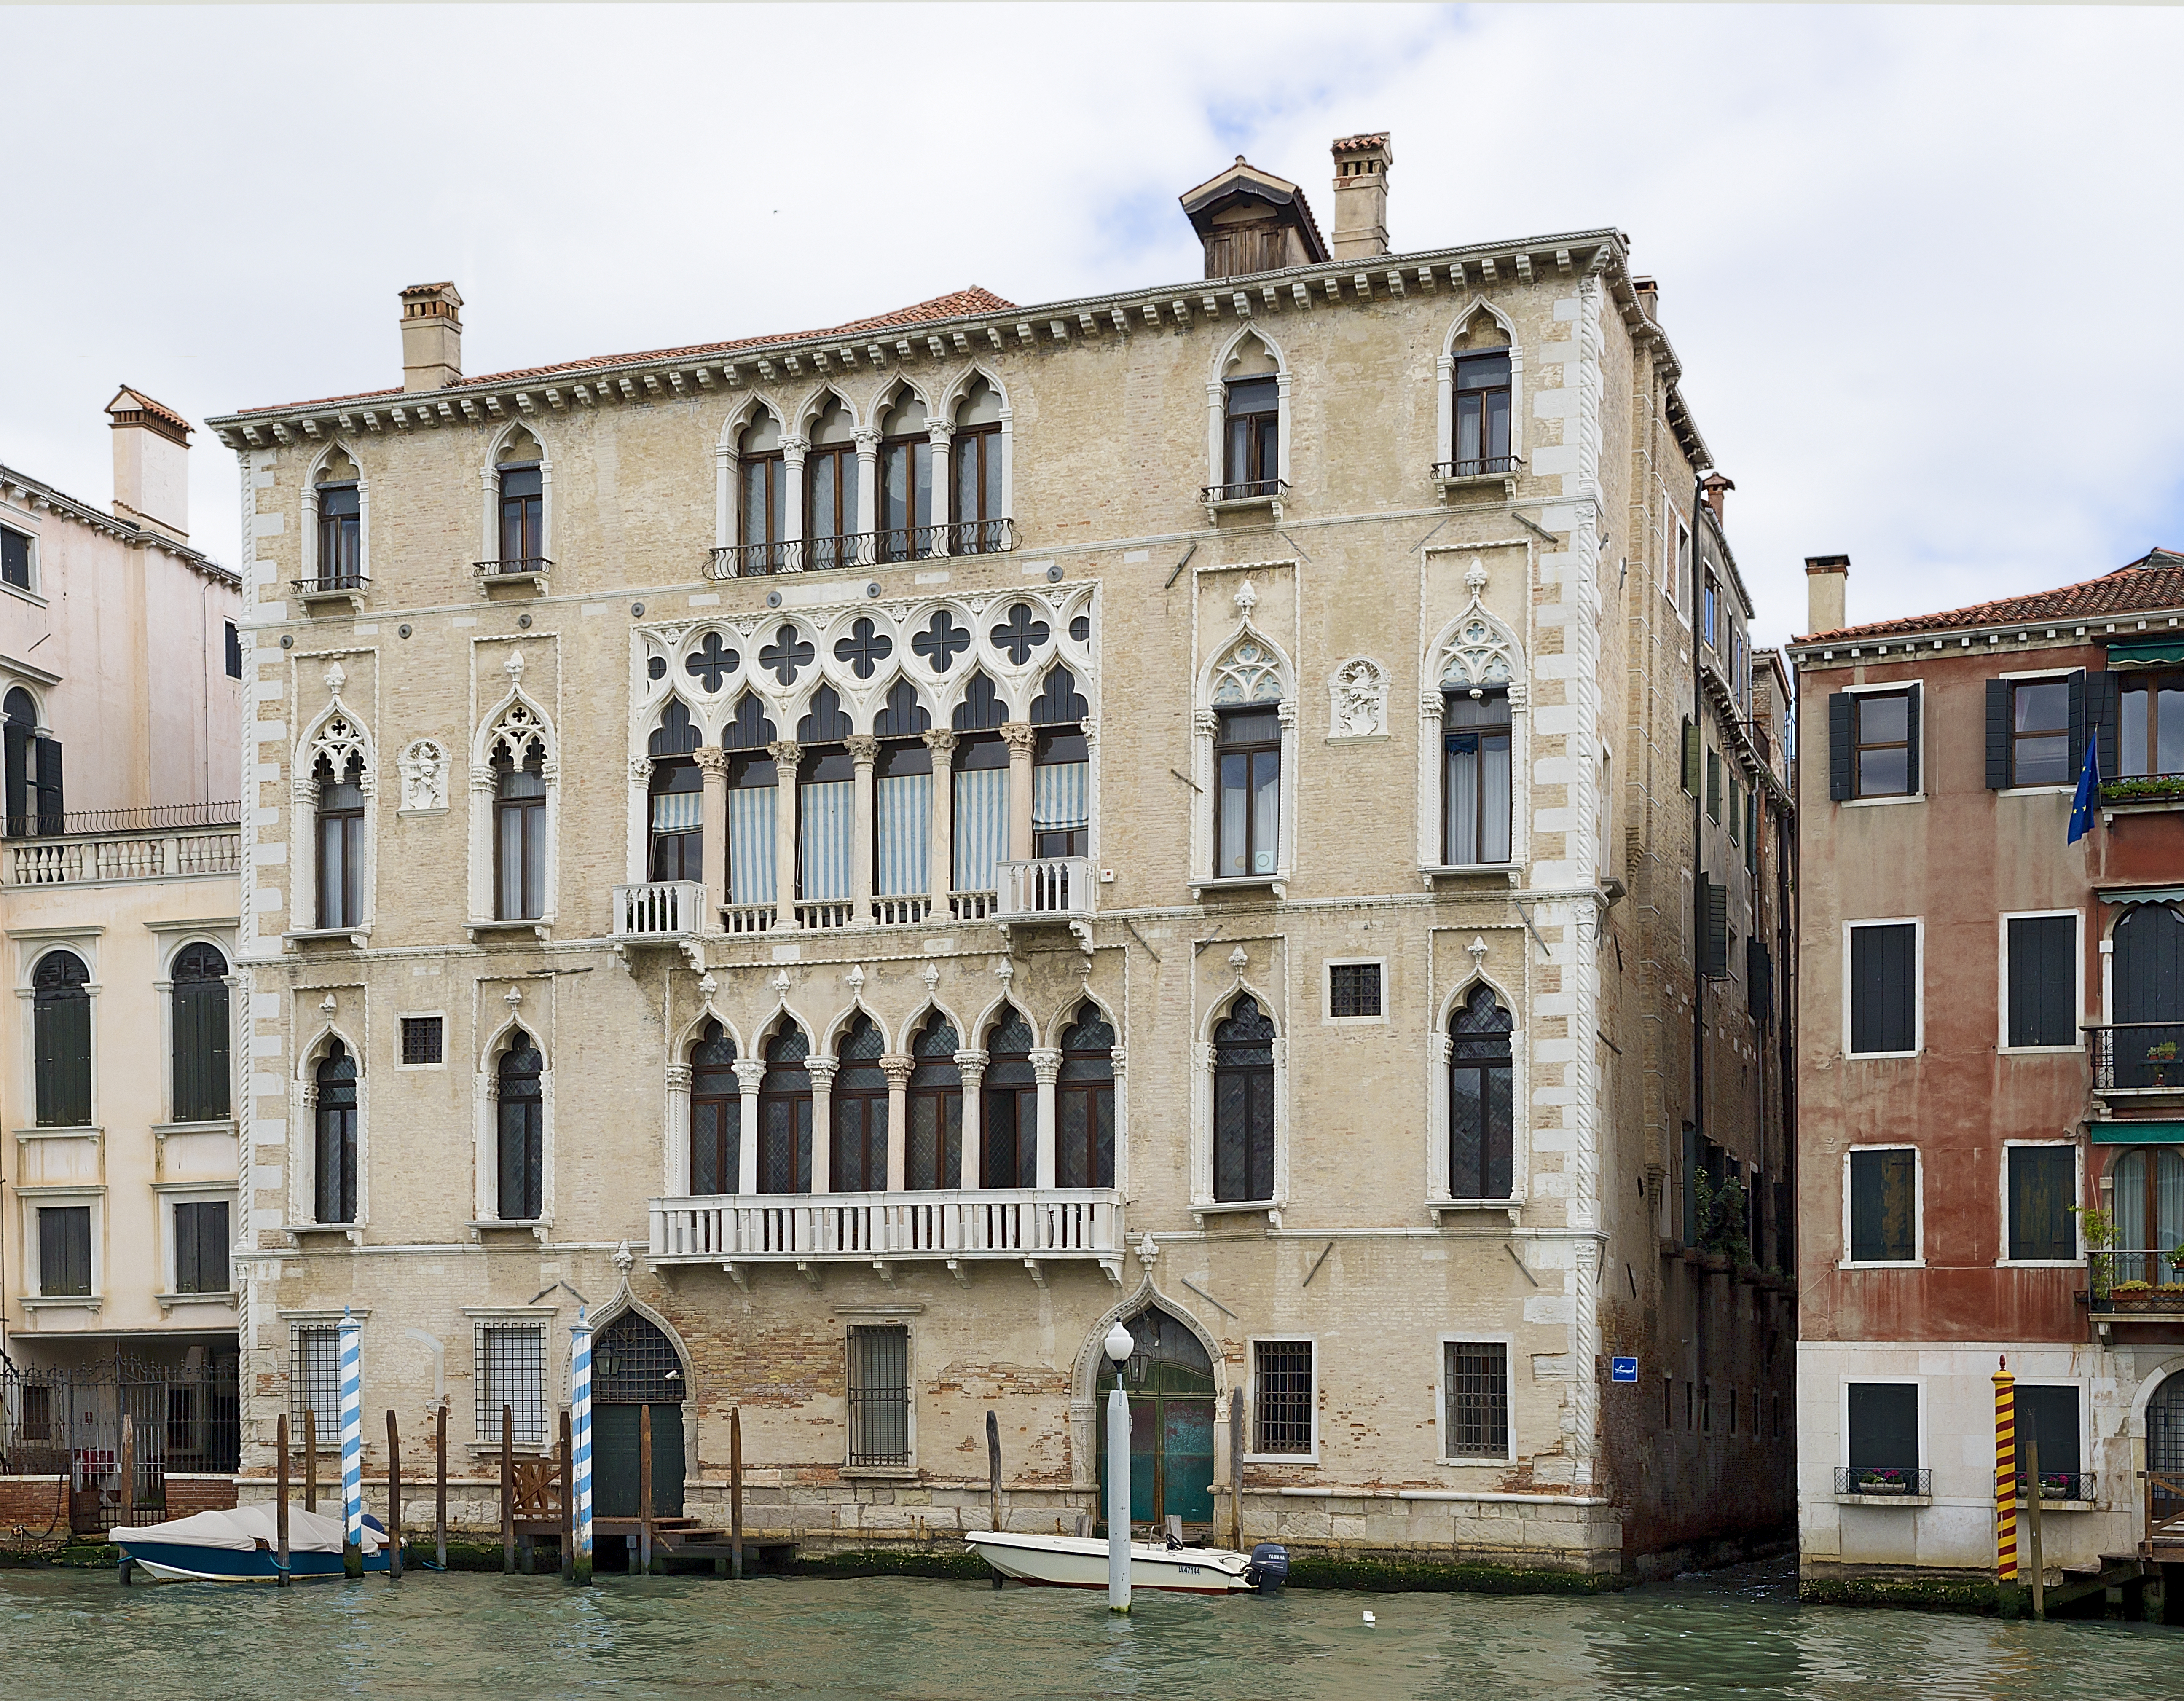 Палаццо дарио в венеции